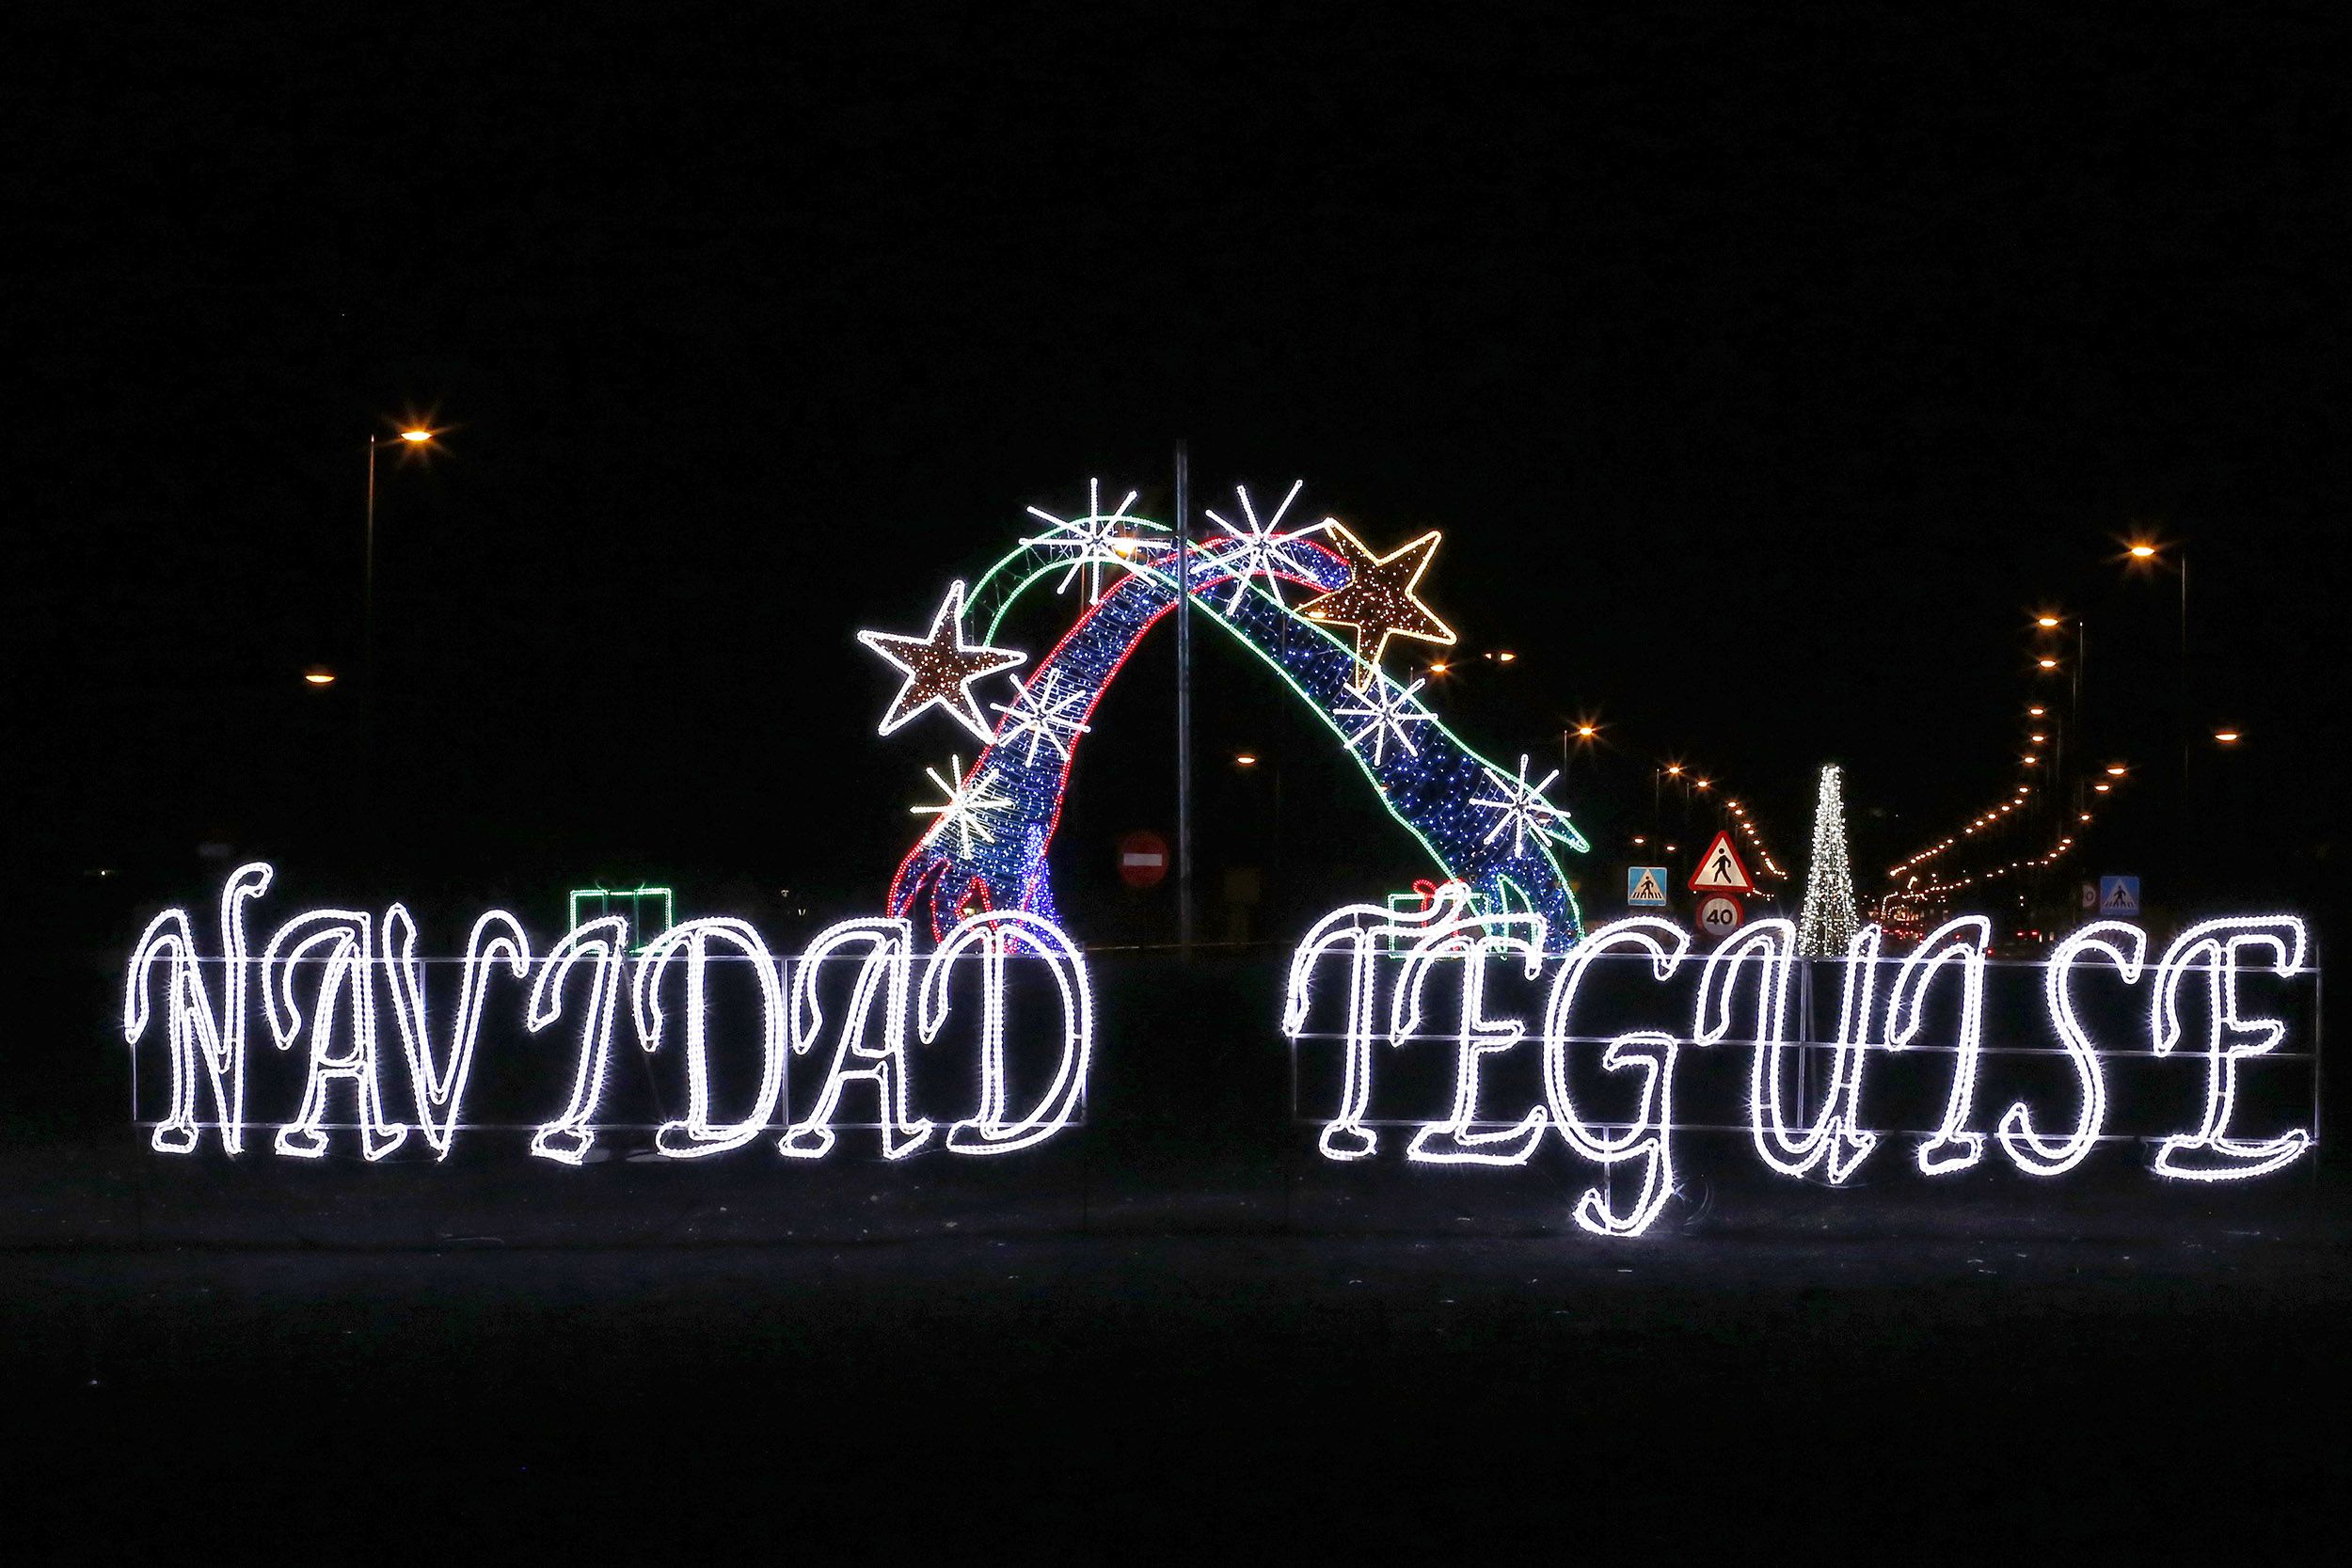 Decorativo navideño en Teguise